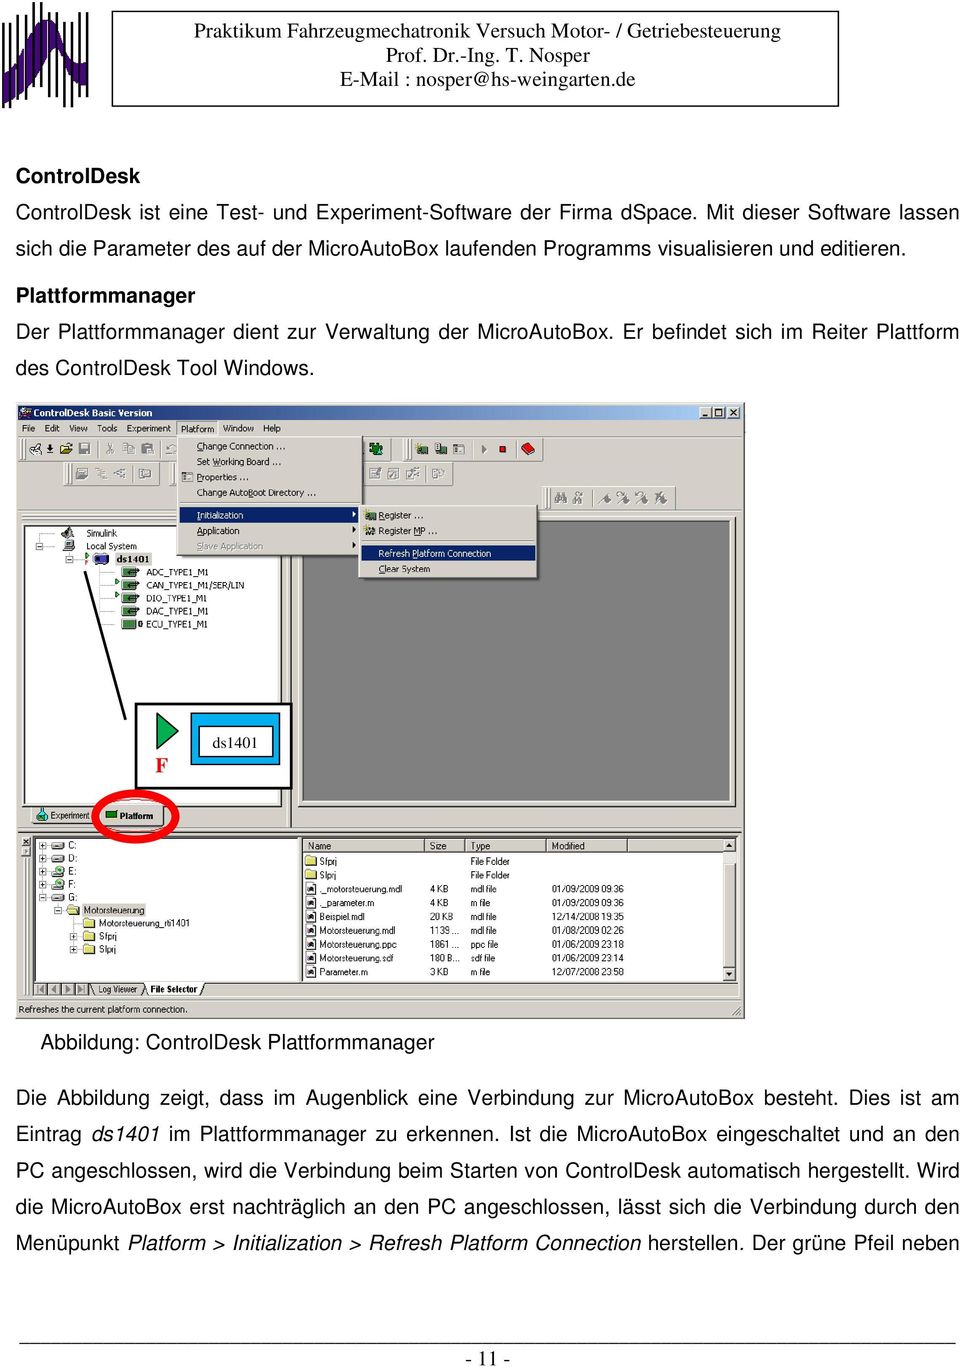 F ds1401 Abbildung: ControlDesk Plattformmanager Die Abbildung zeigt, dass im Augenblick eine Verbindung zur MicroAutoBox besteht. Dies ist am Eintrag ds1401 im Plattformmanager zu erkennen.